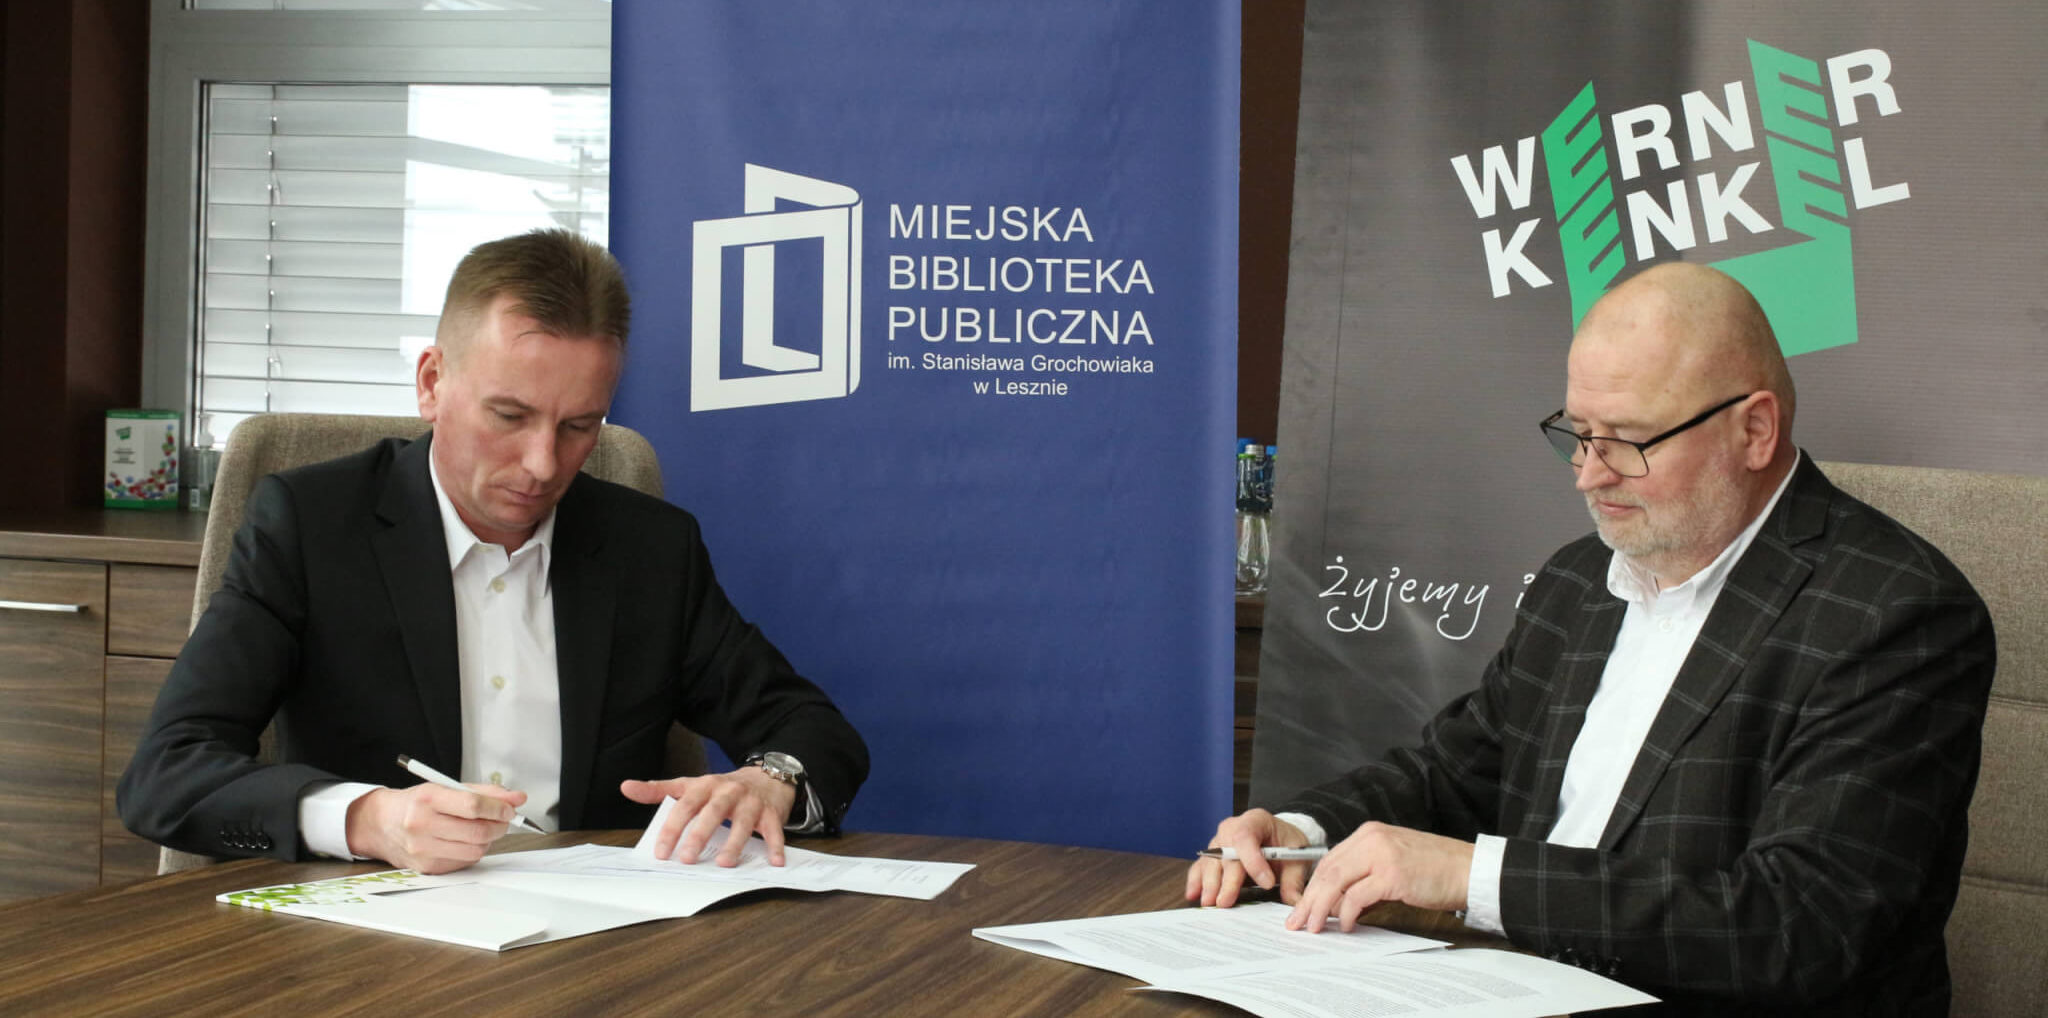 Werner Kenkel oficjalnie Mecenasem Kultury Miejskiej Biblioteki Publicznej w Lesznie